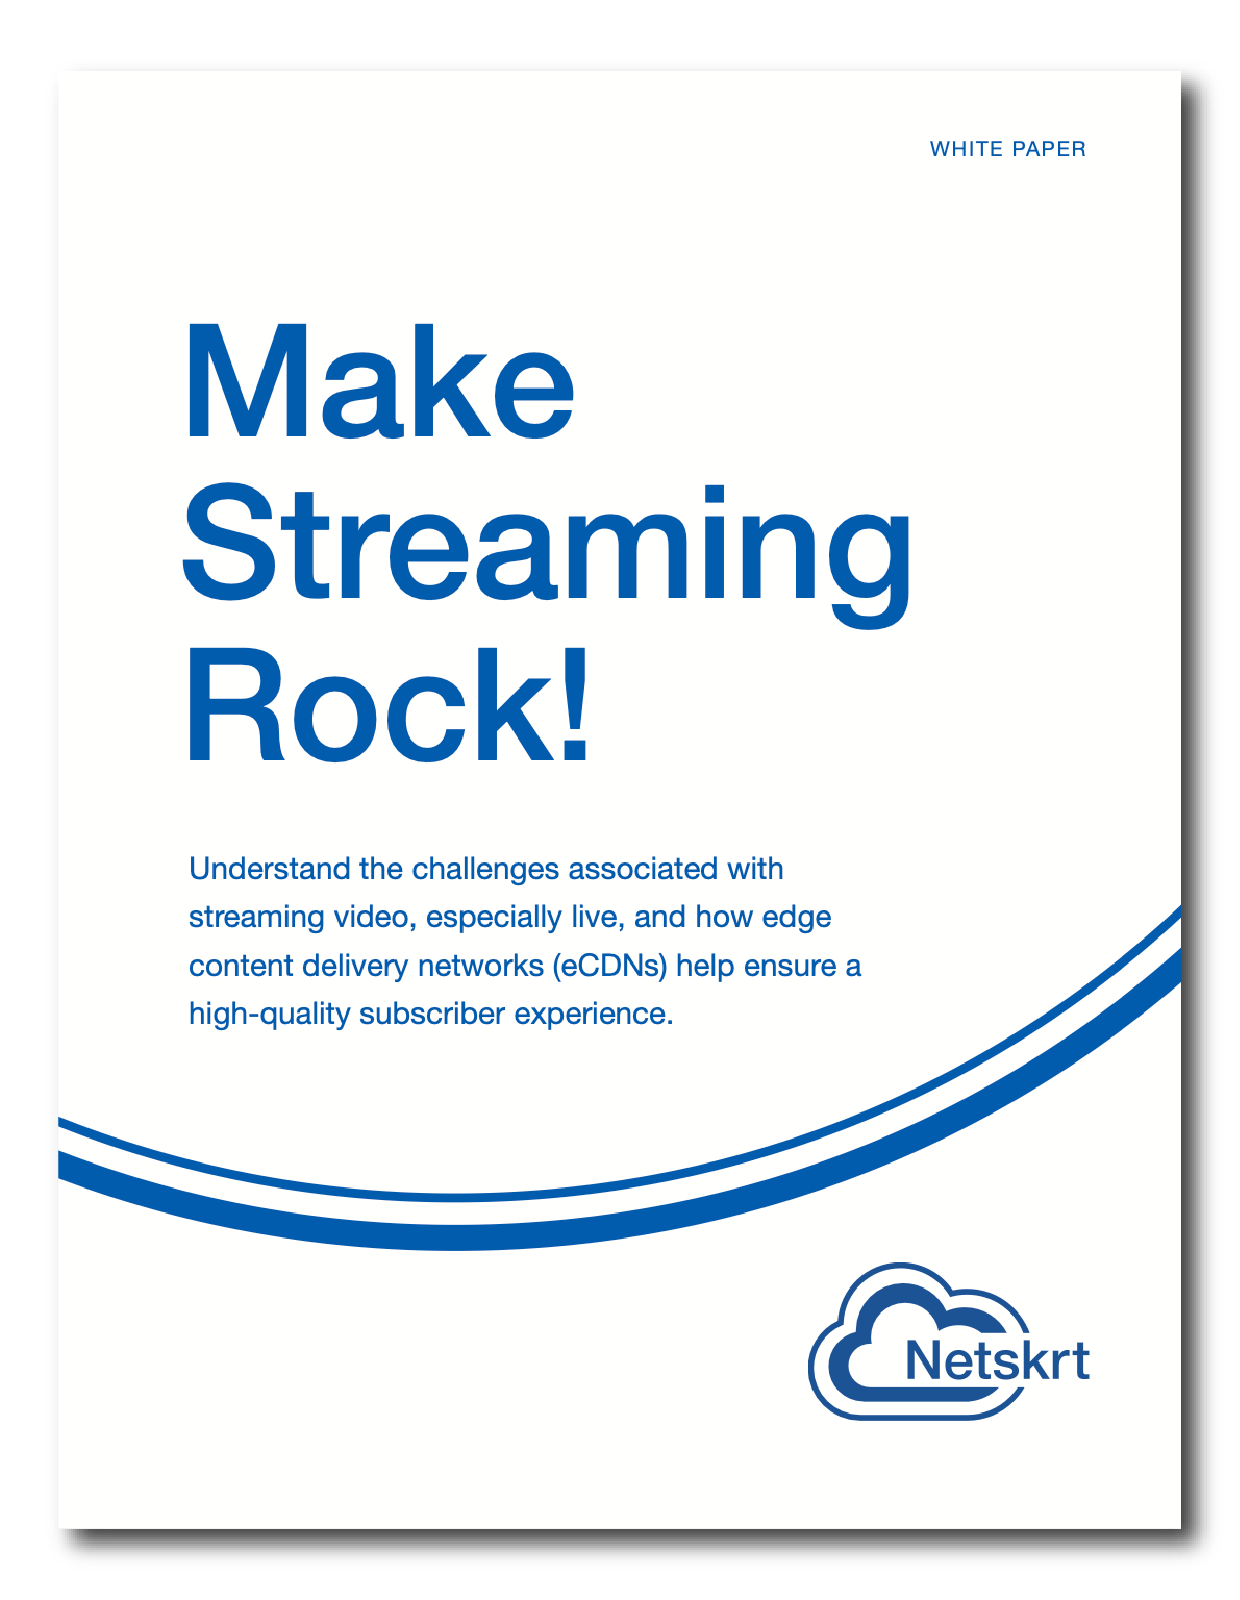 WP_Make-Streaming-Rock_thumb